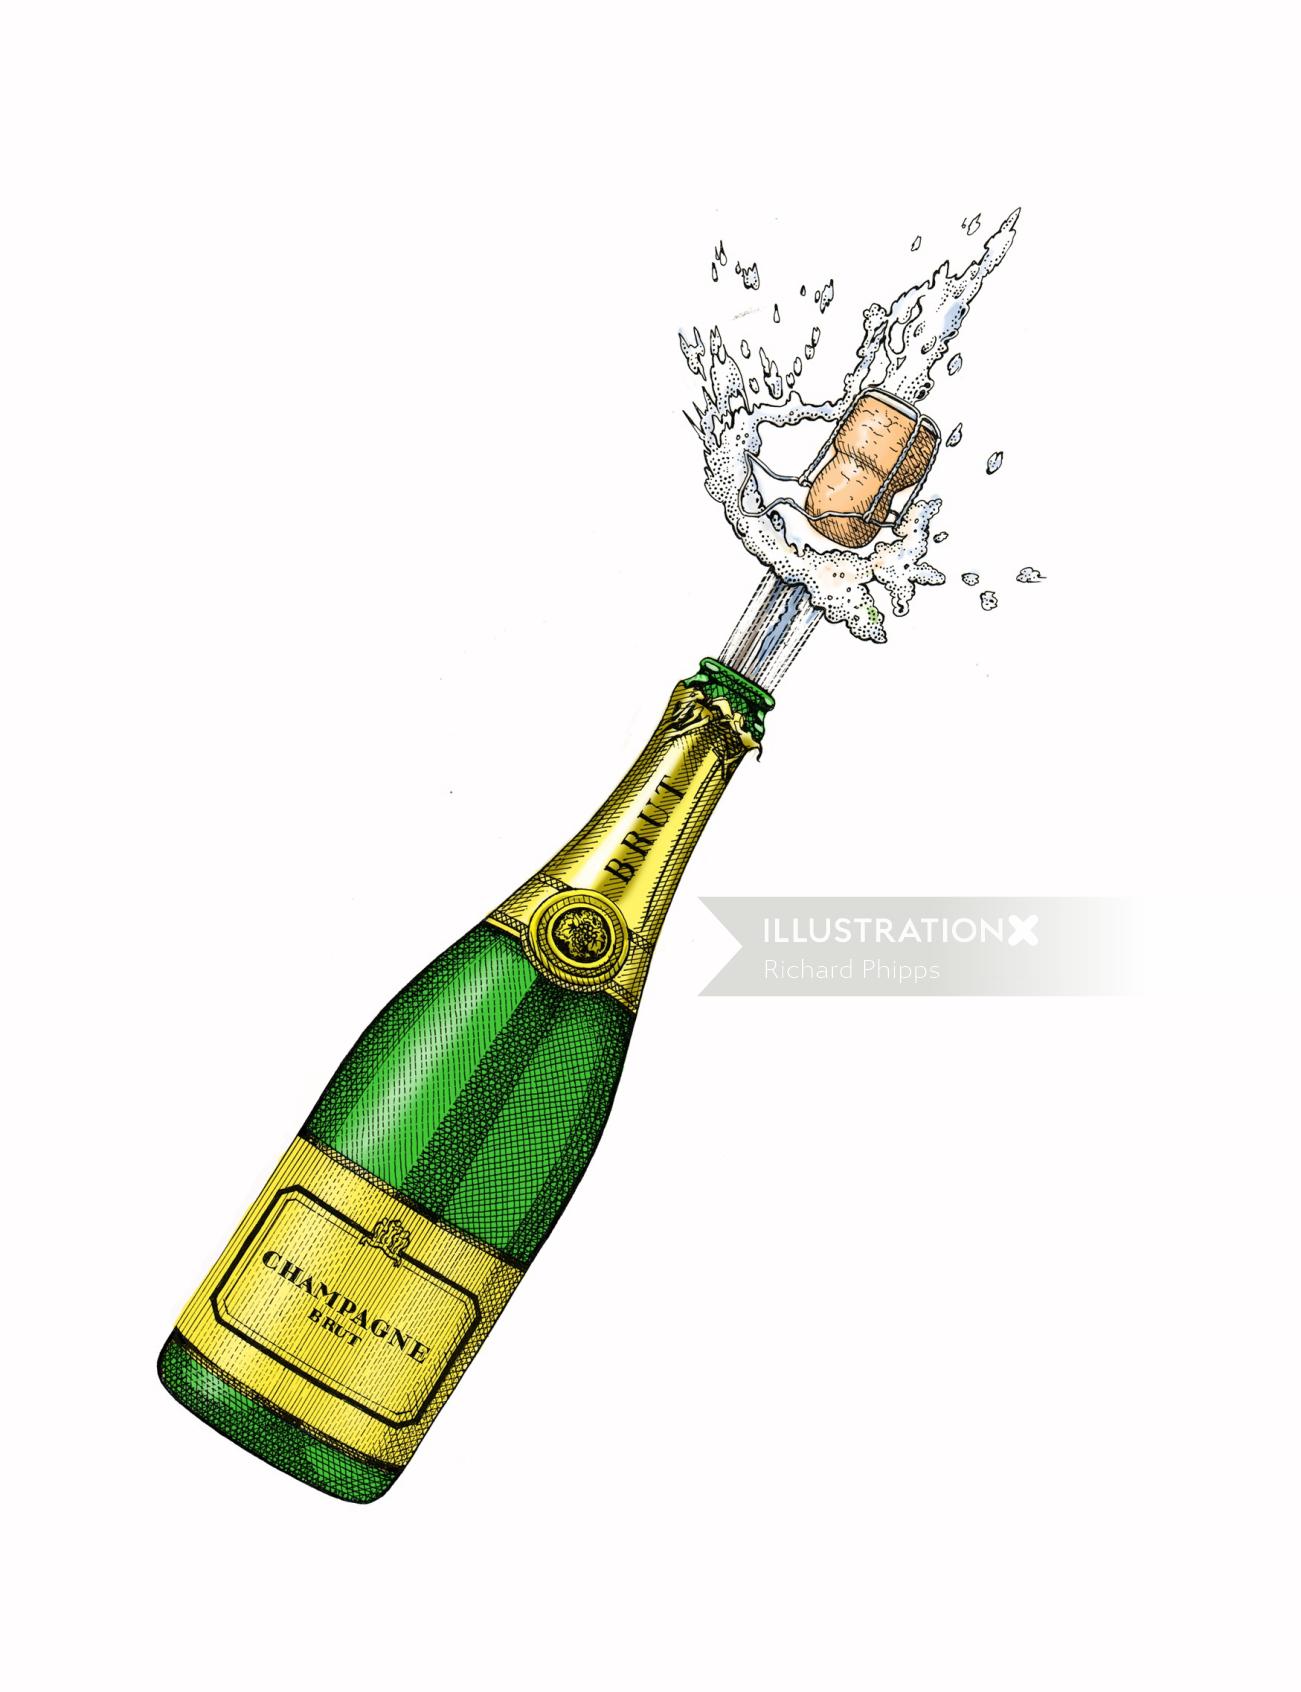 ブリュット ポップ シャンパン コルクのレトロなデザイン